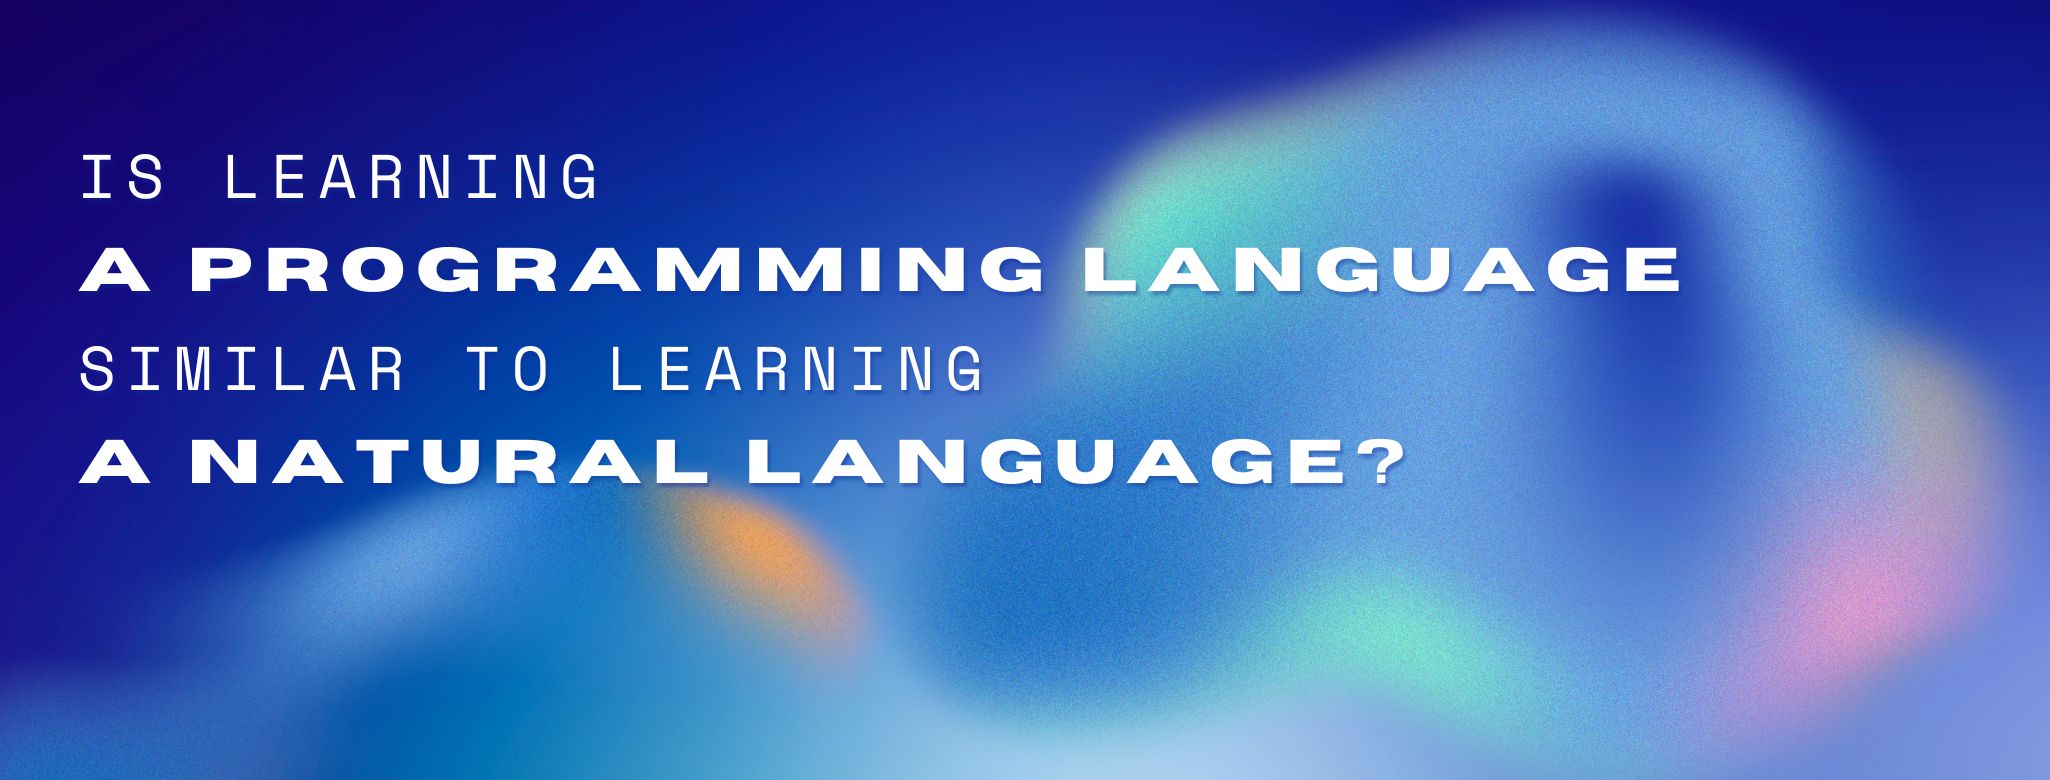 programming-language-header